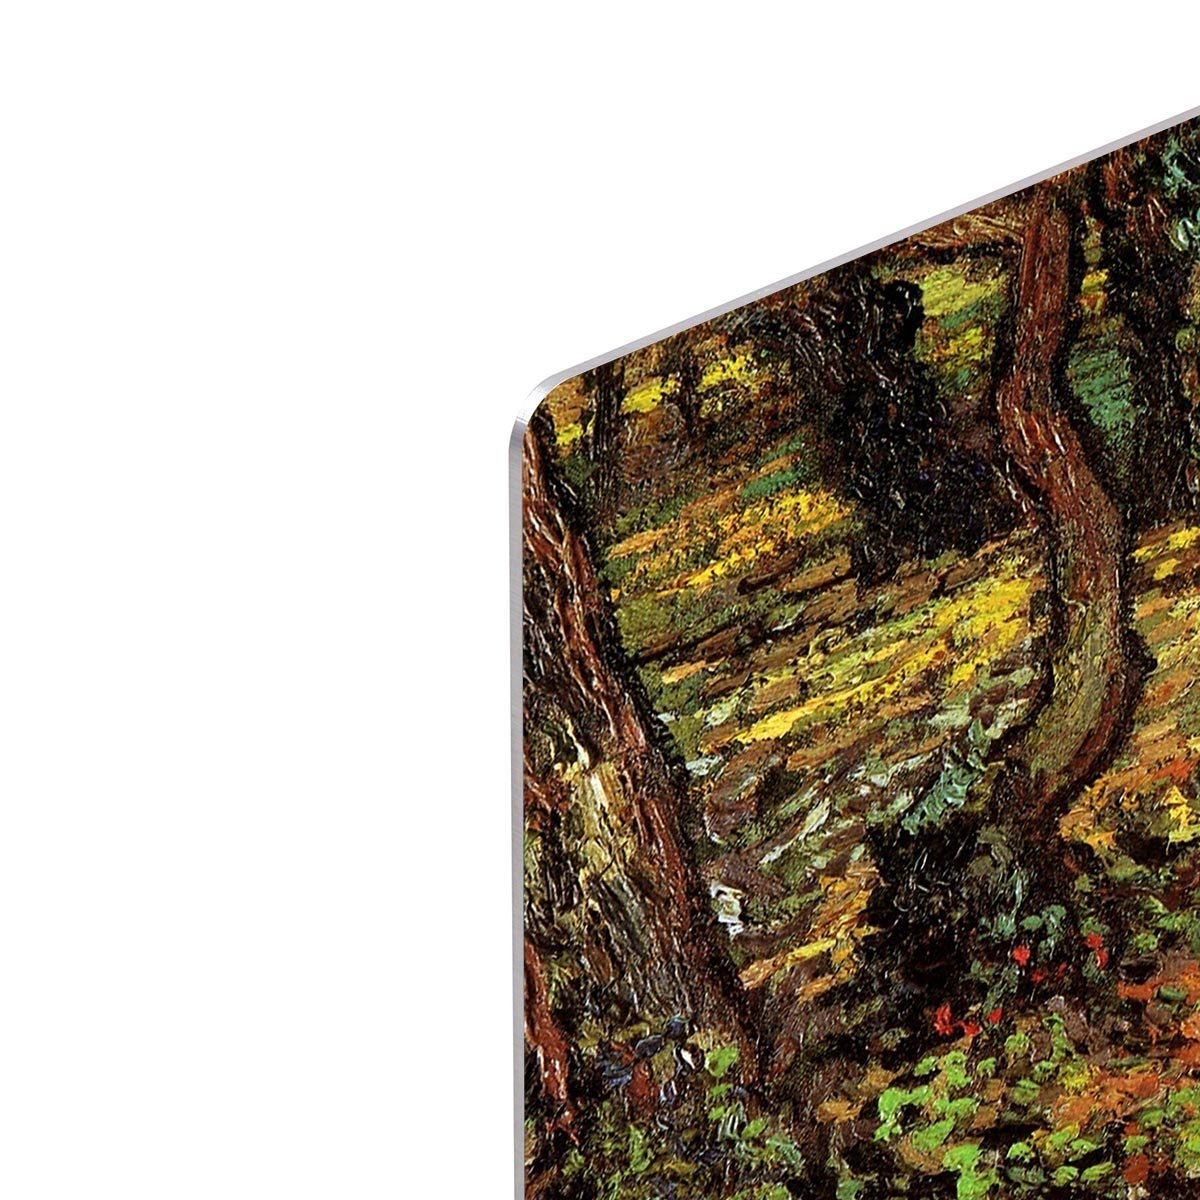 Tree Trunks with Ivy by Van Gogh HD Metal Print